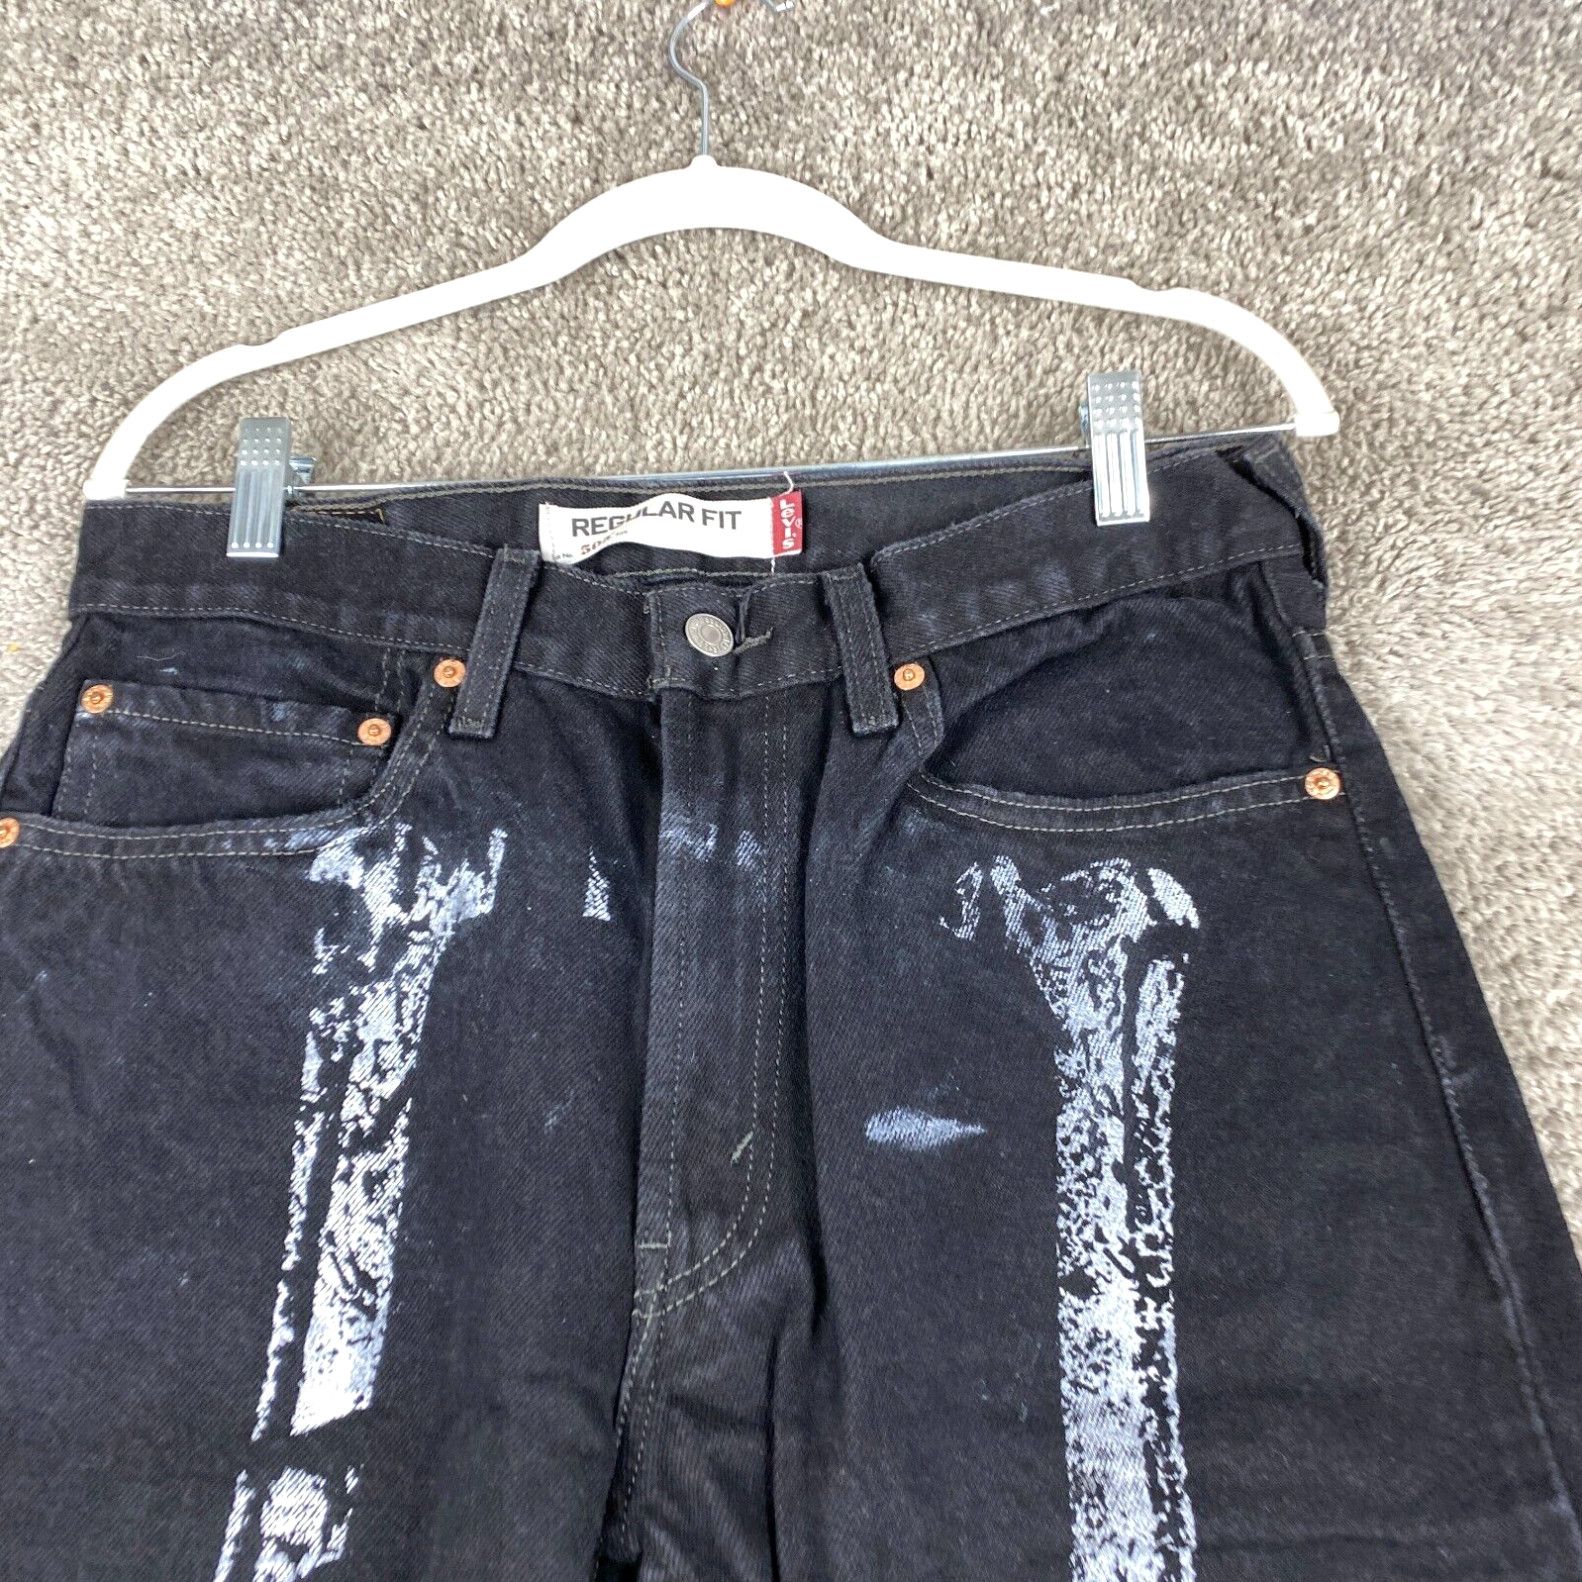 Levi's Levi's 505 Regular Fit Straight Jeans Men's Size W32xL34 Black Bone Print Size US 32 / EU 48 - 2 Preview